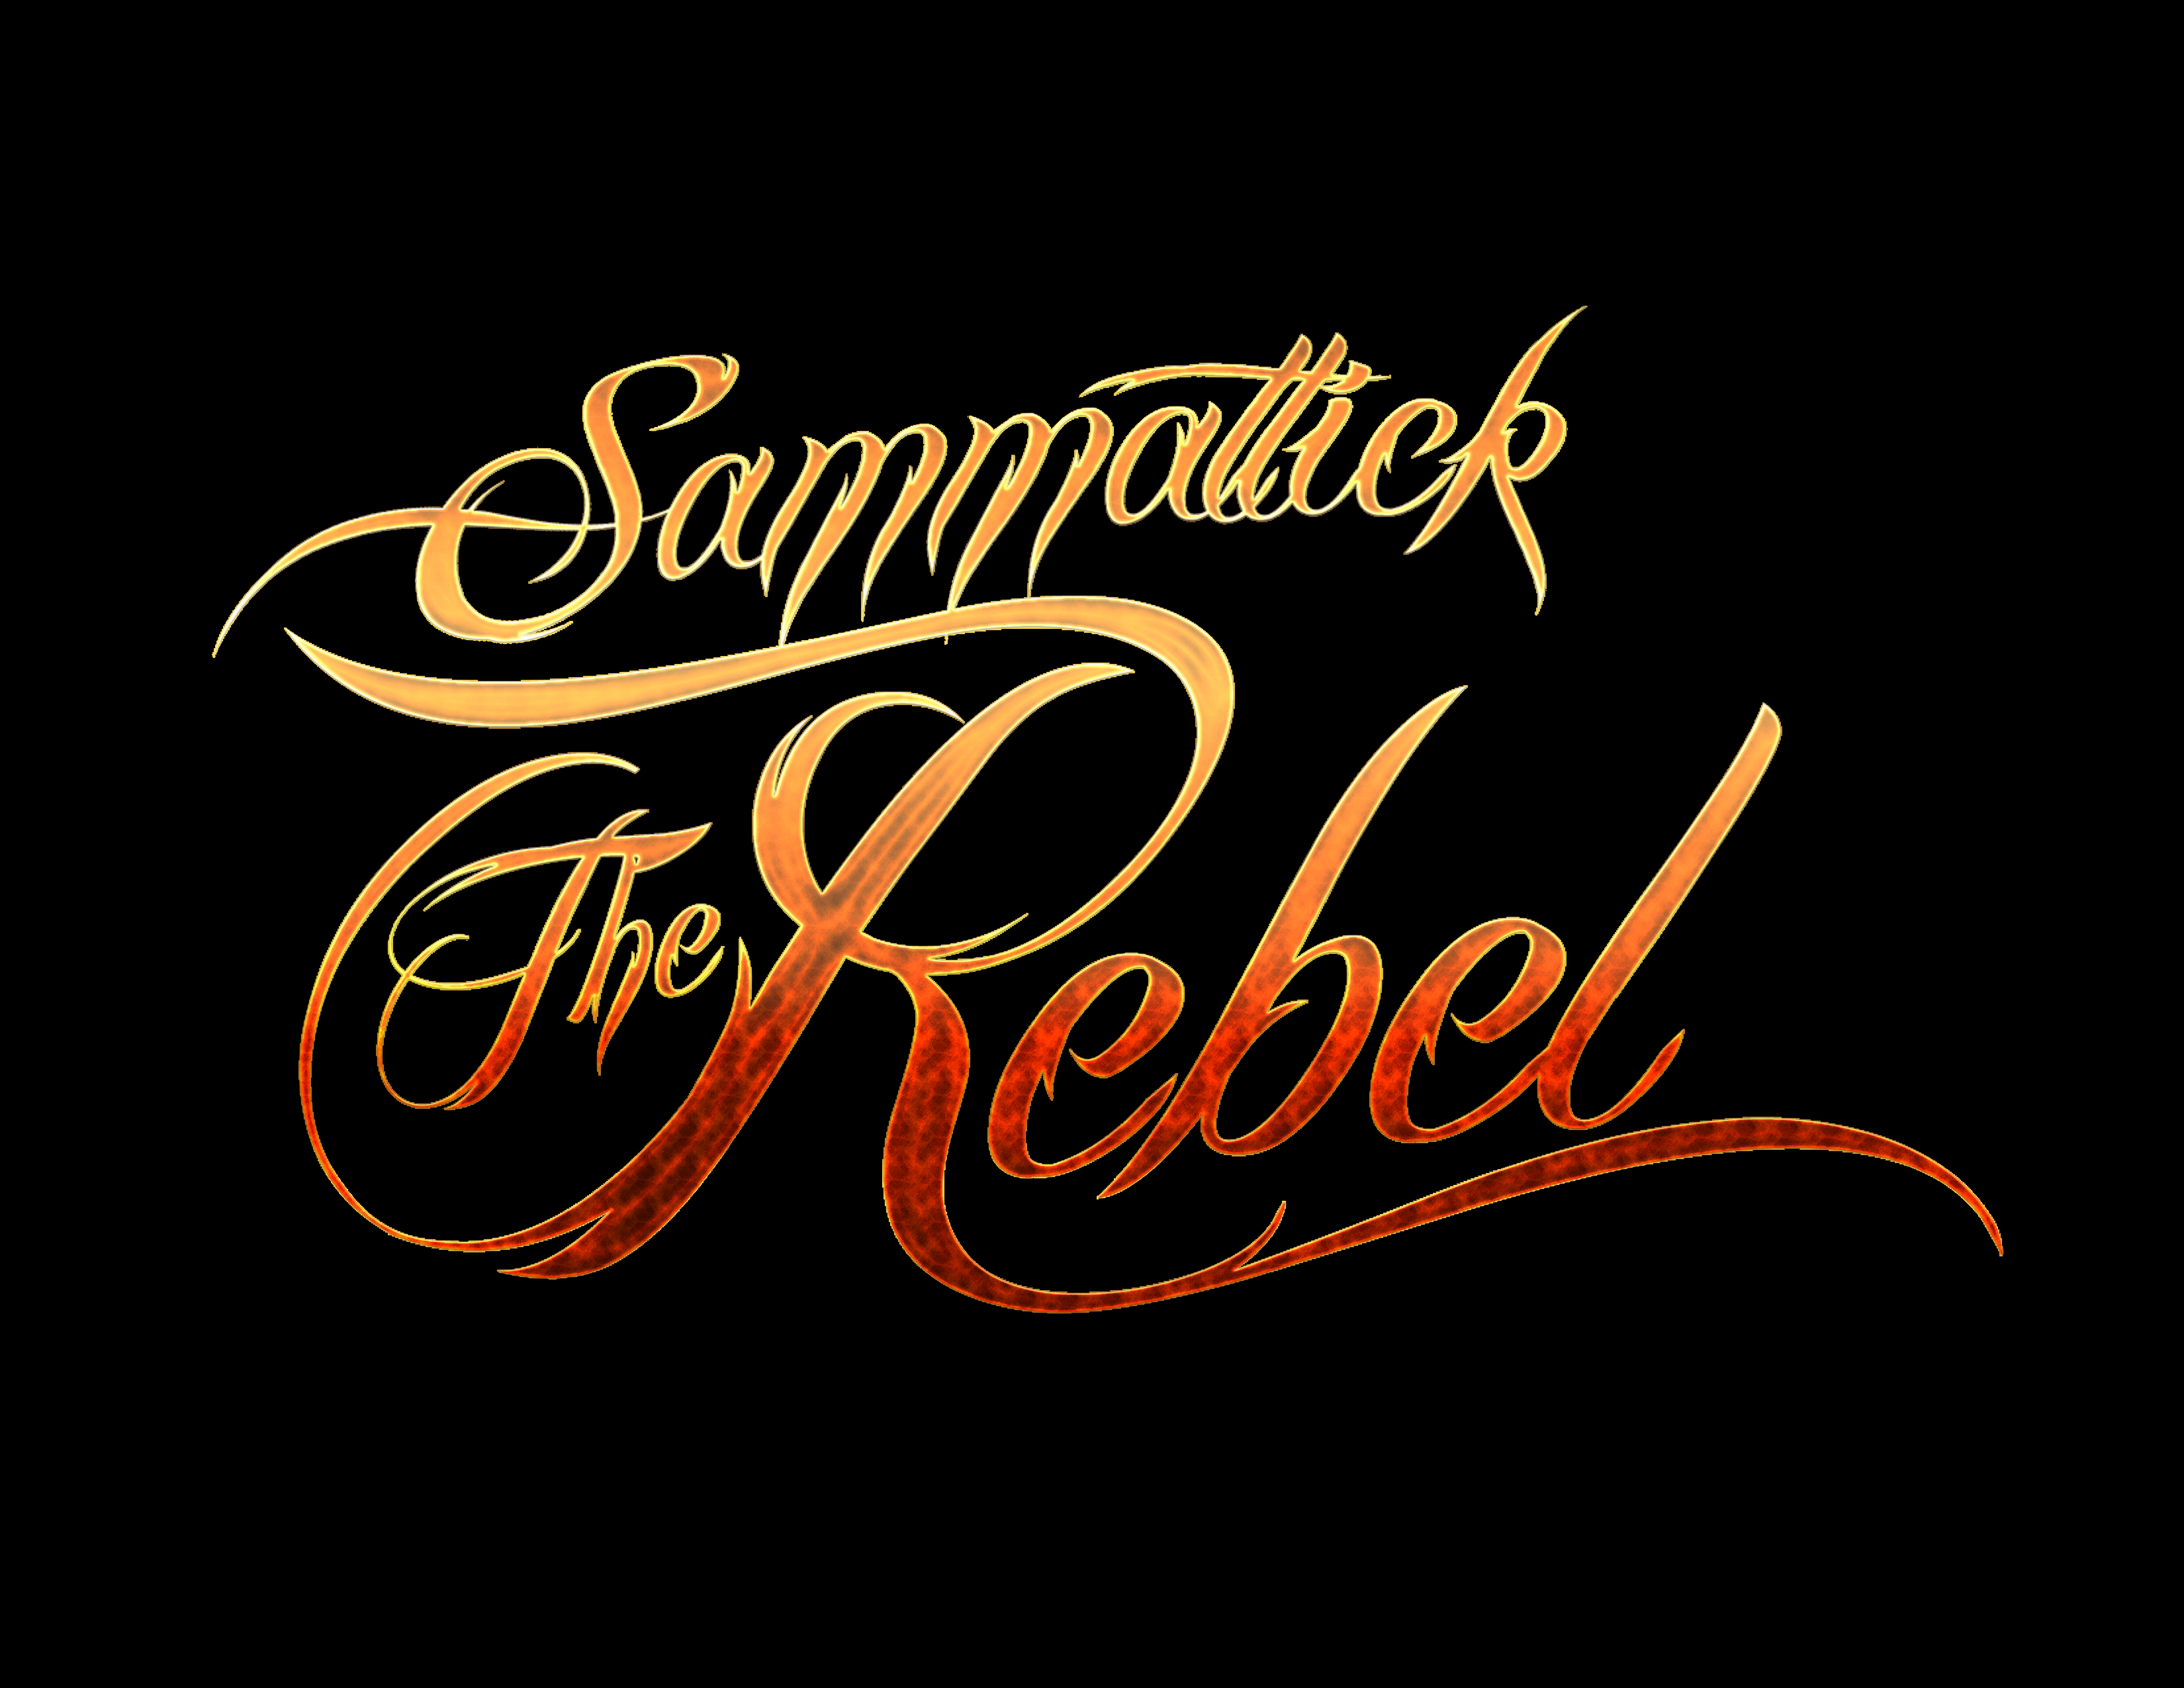 Sammattick the rebel